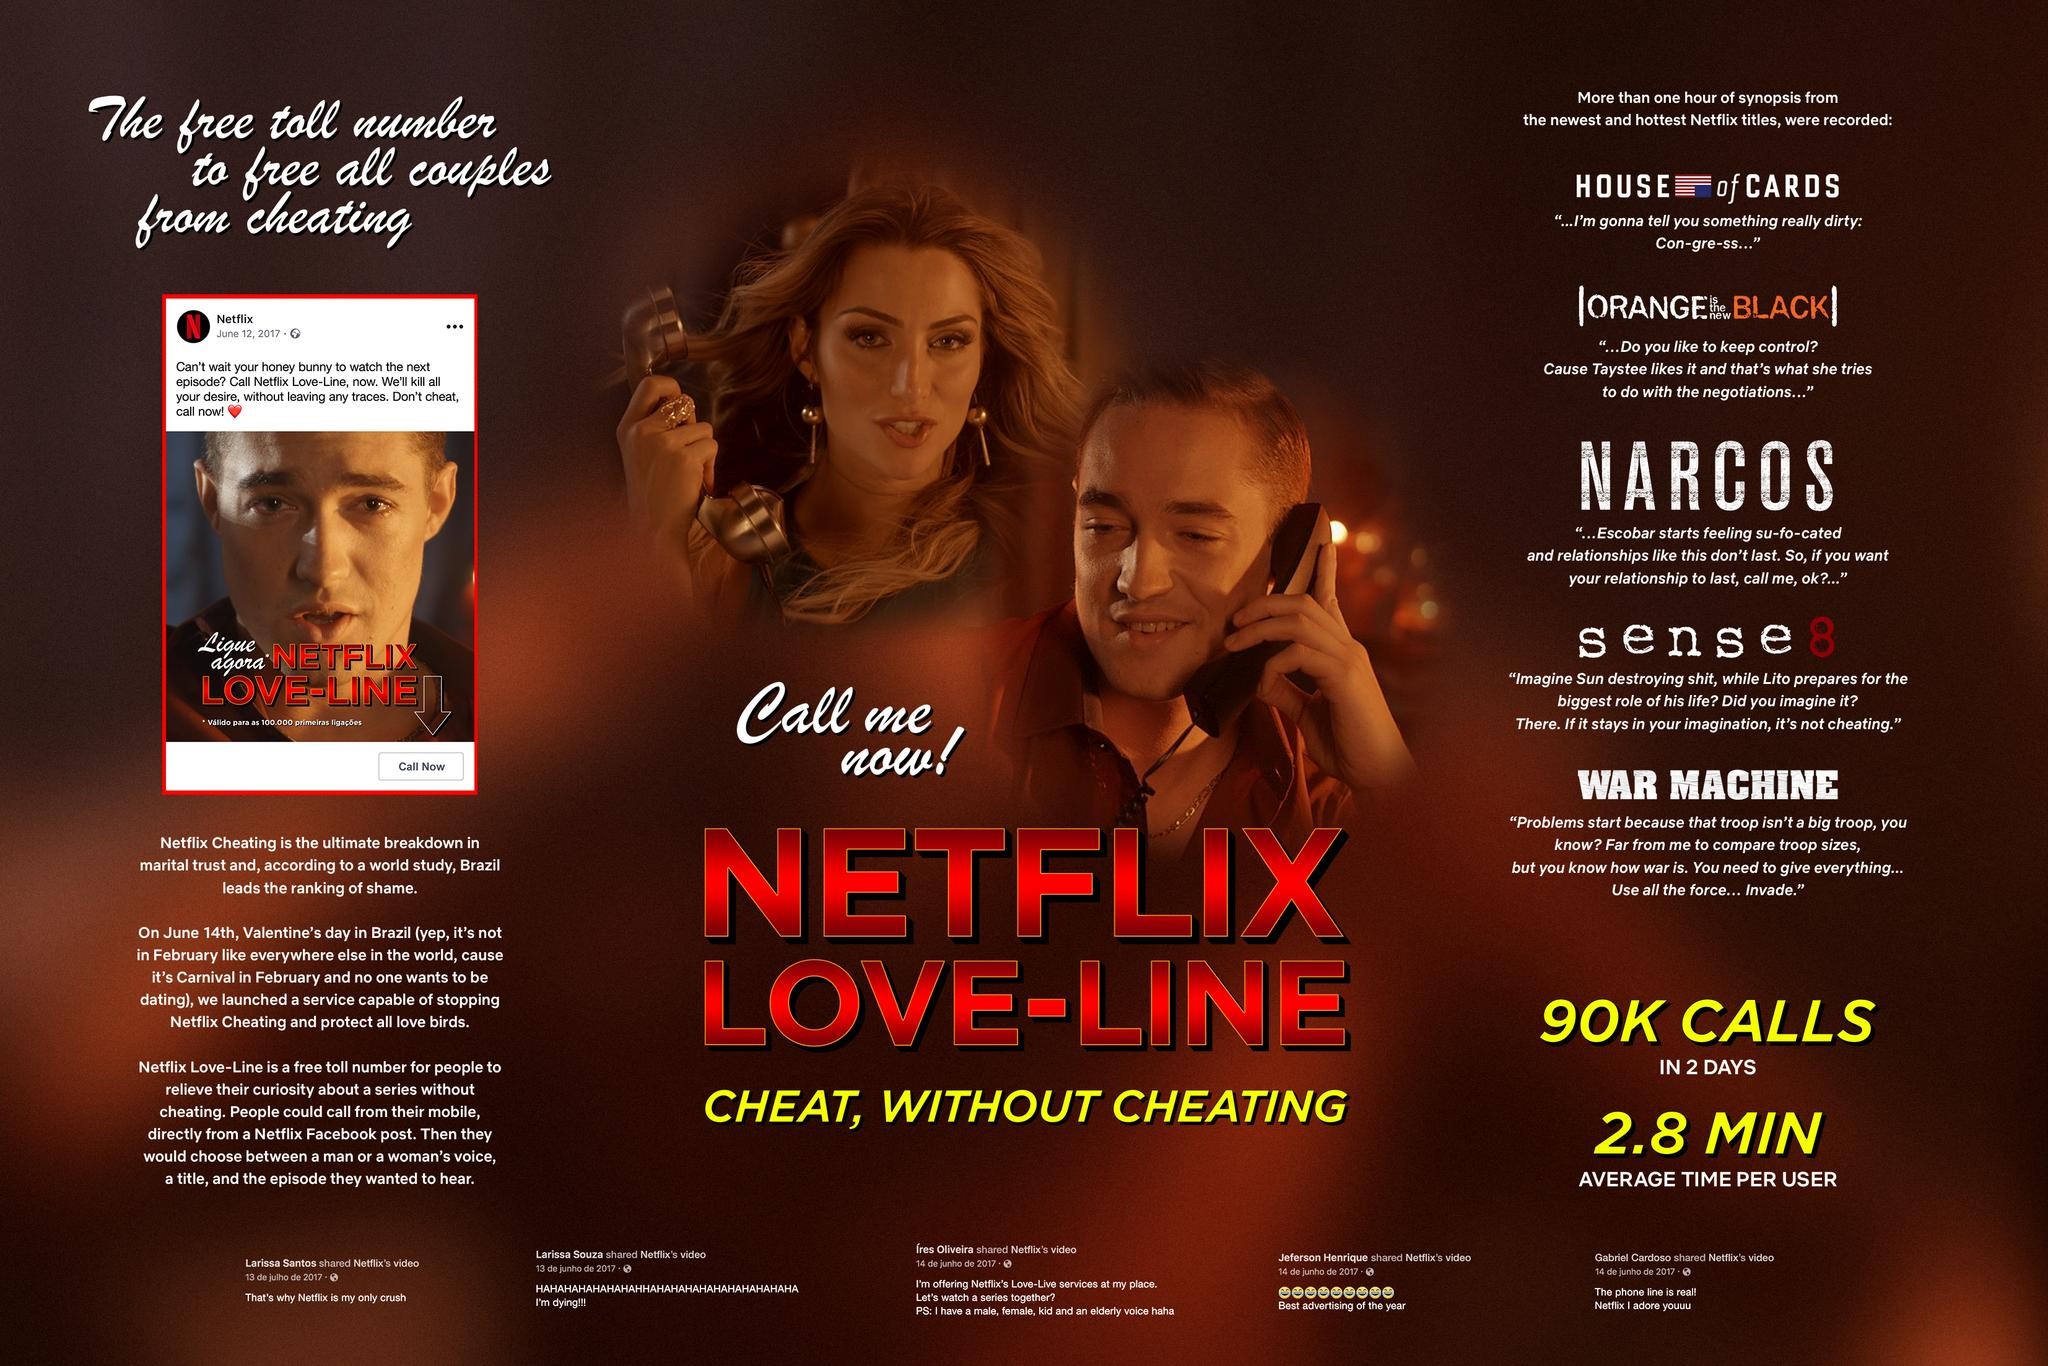 Netflix Love-Line